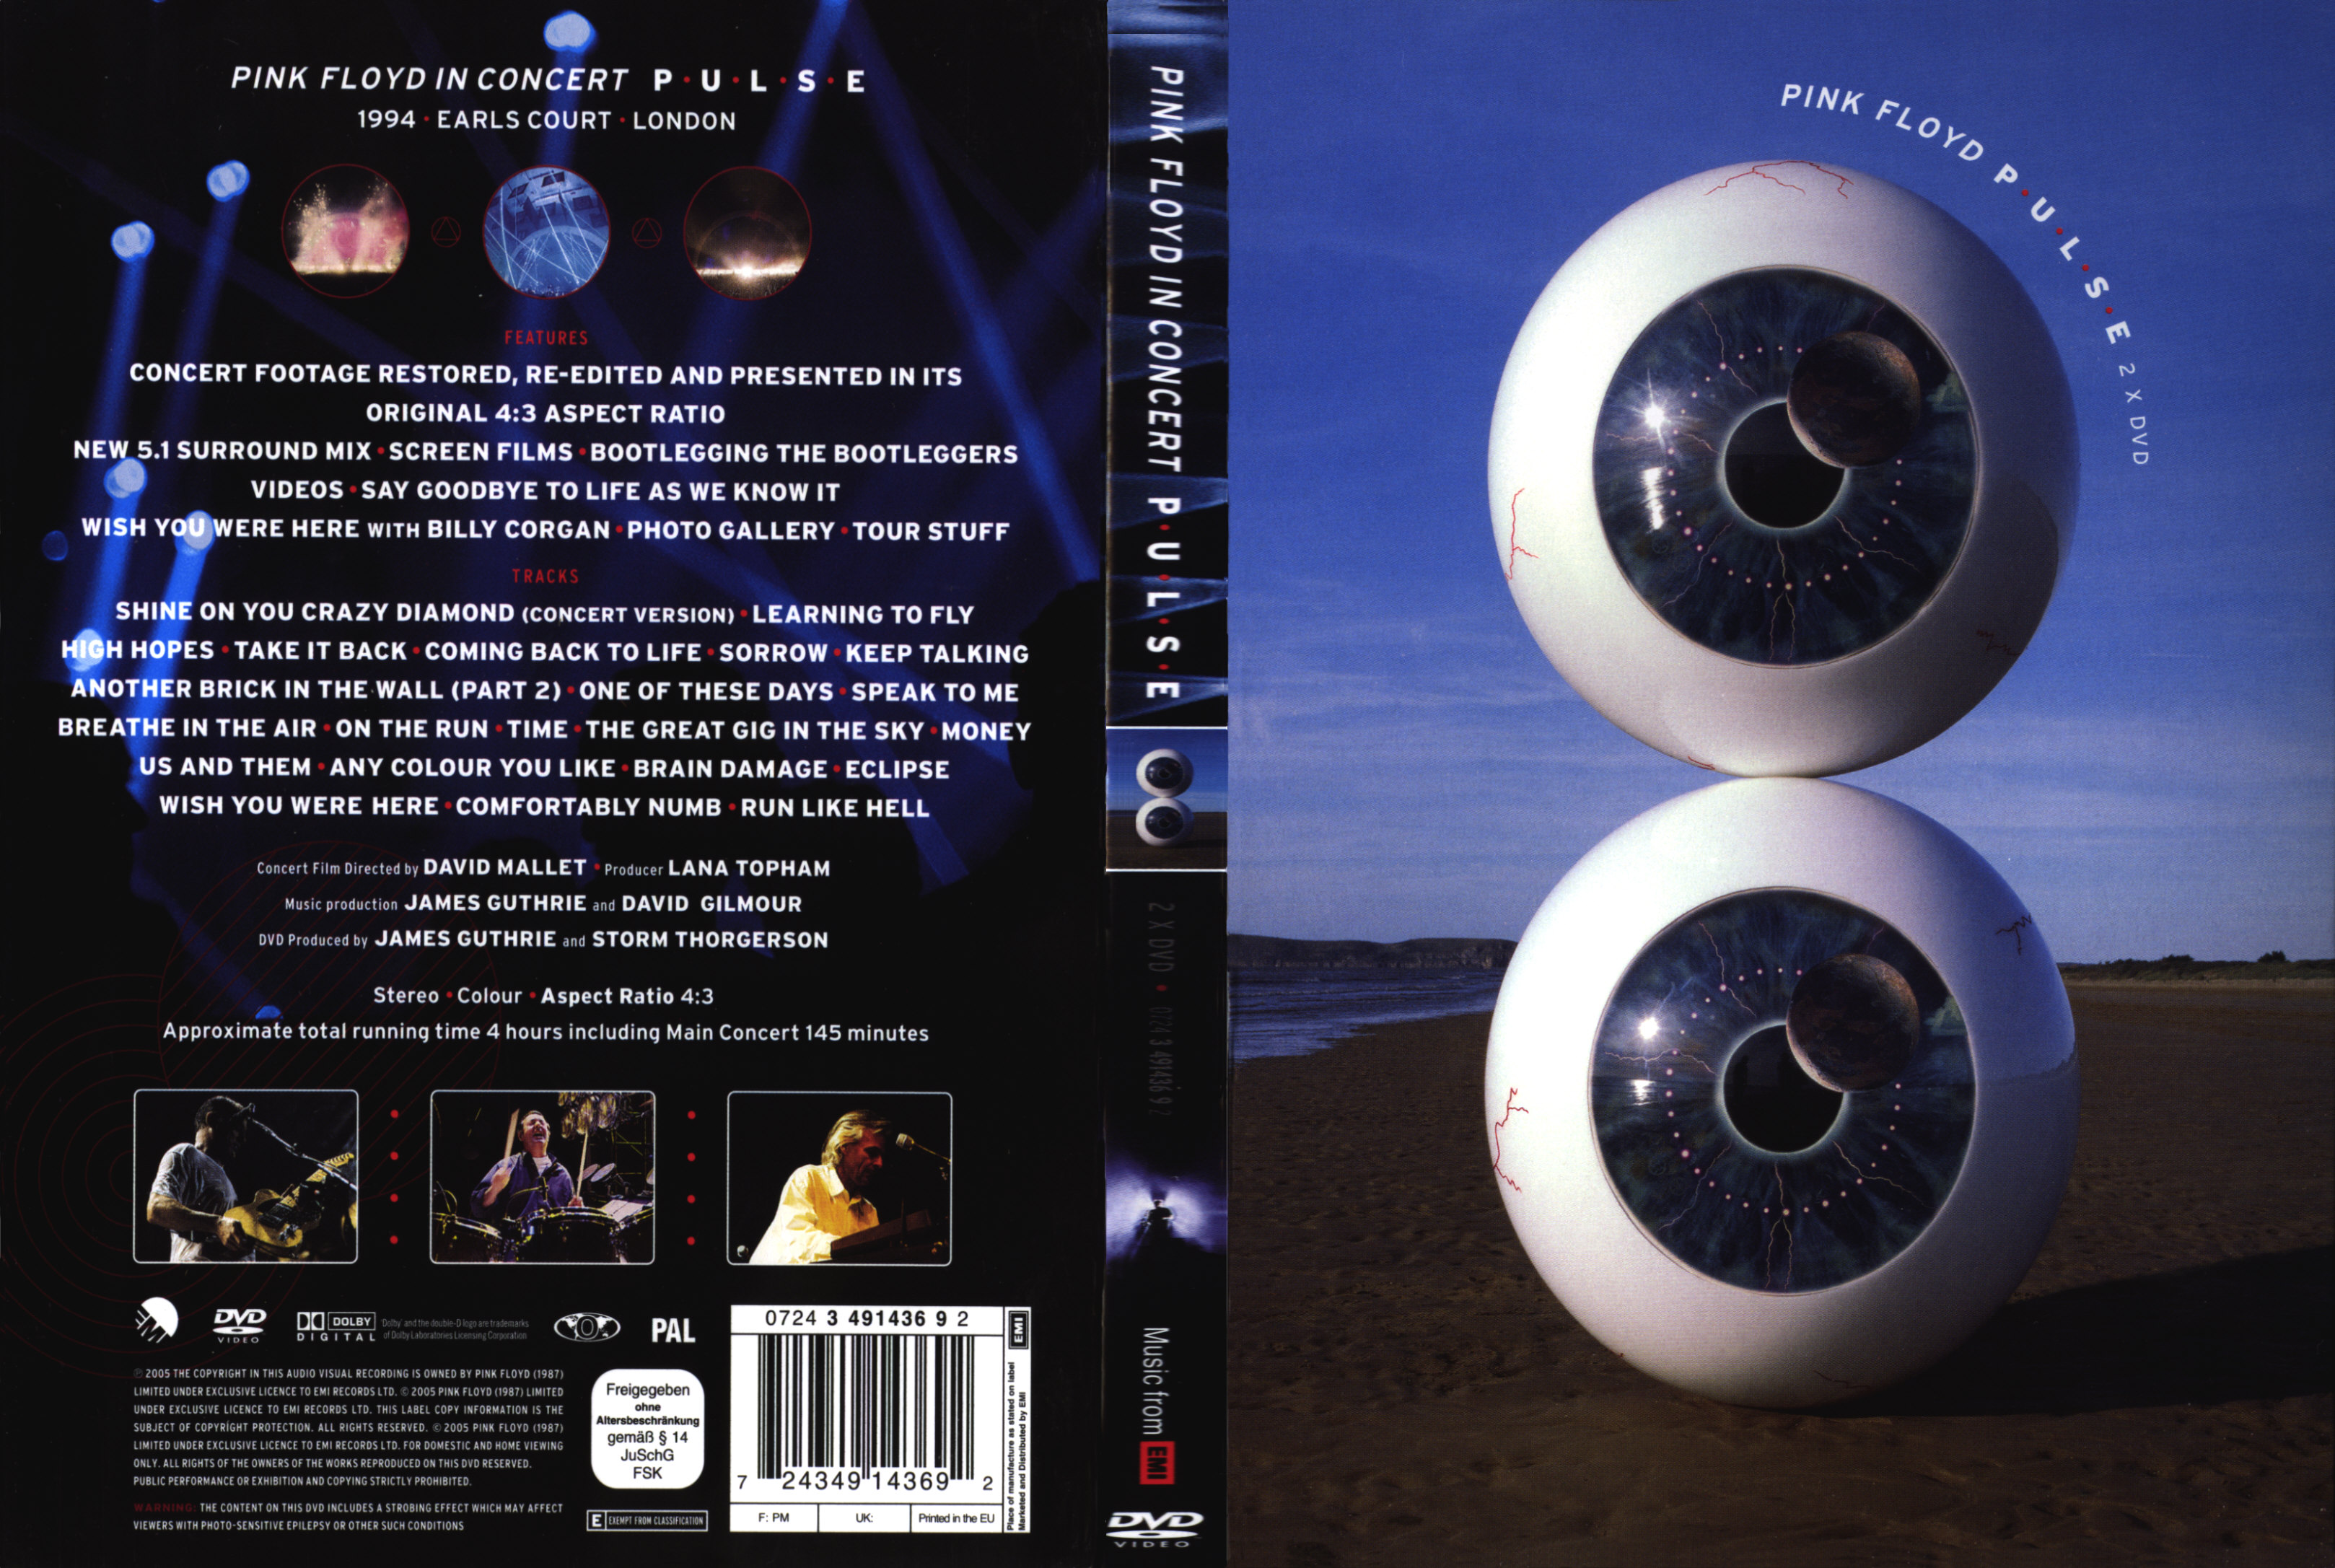 Jaquette DVD Pink Floyd pulse v2